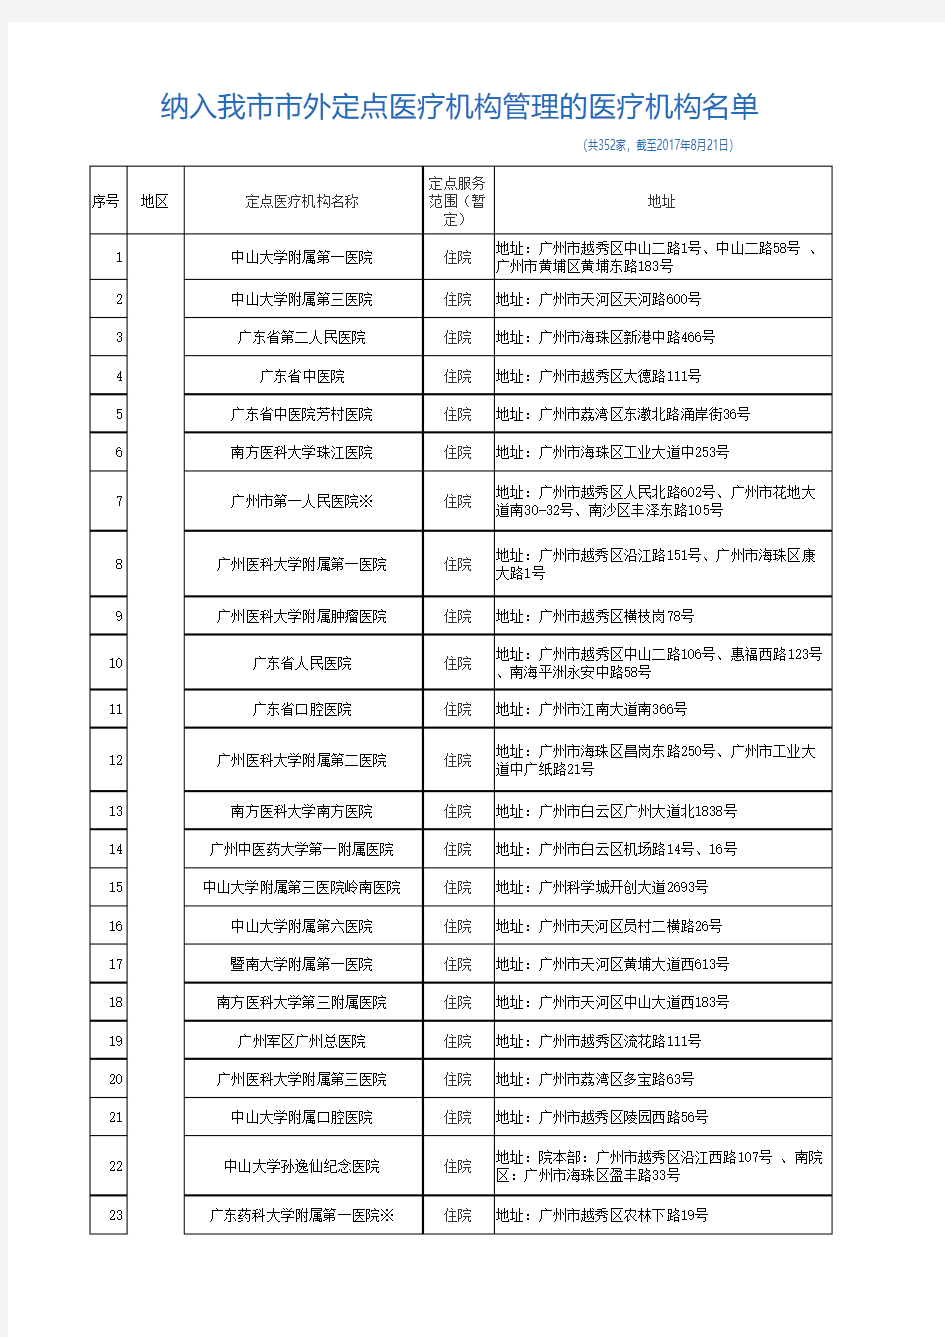 2017-08-28深圳市社会医疗保险市外定点医疗机构名单